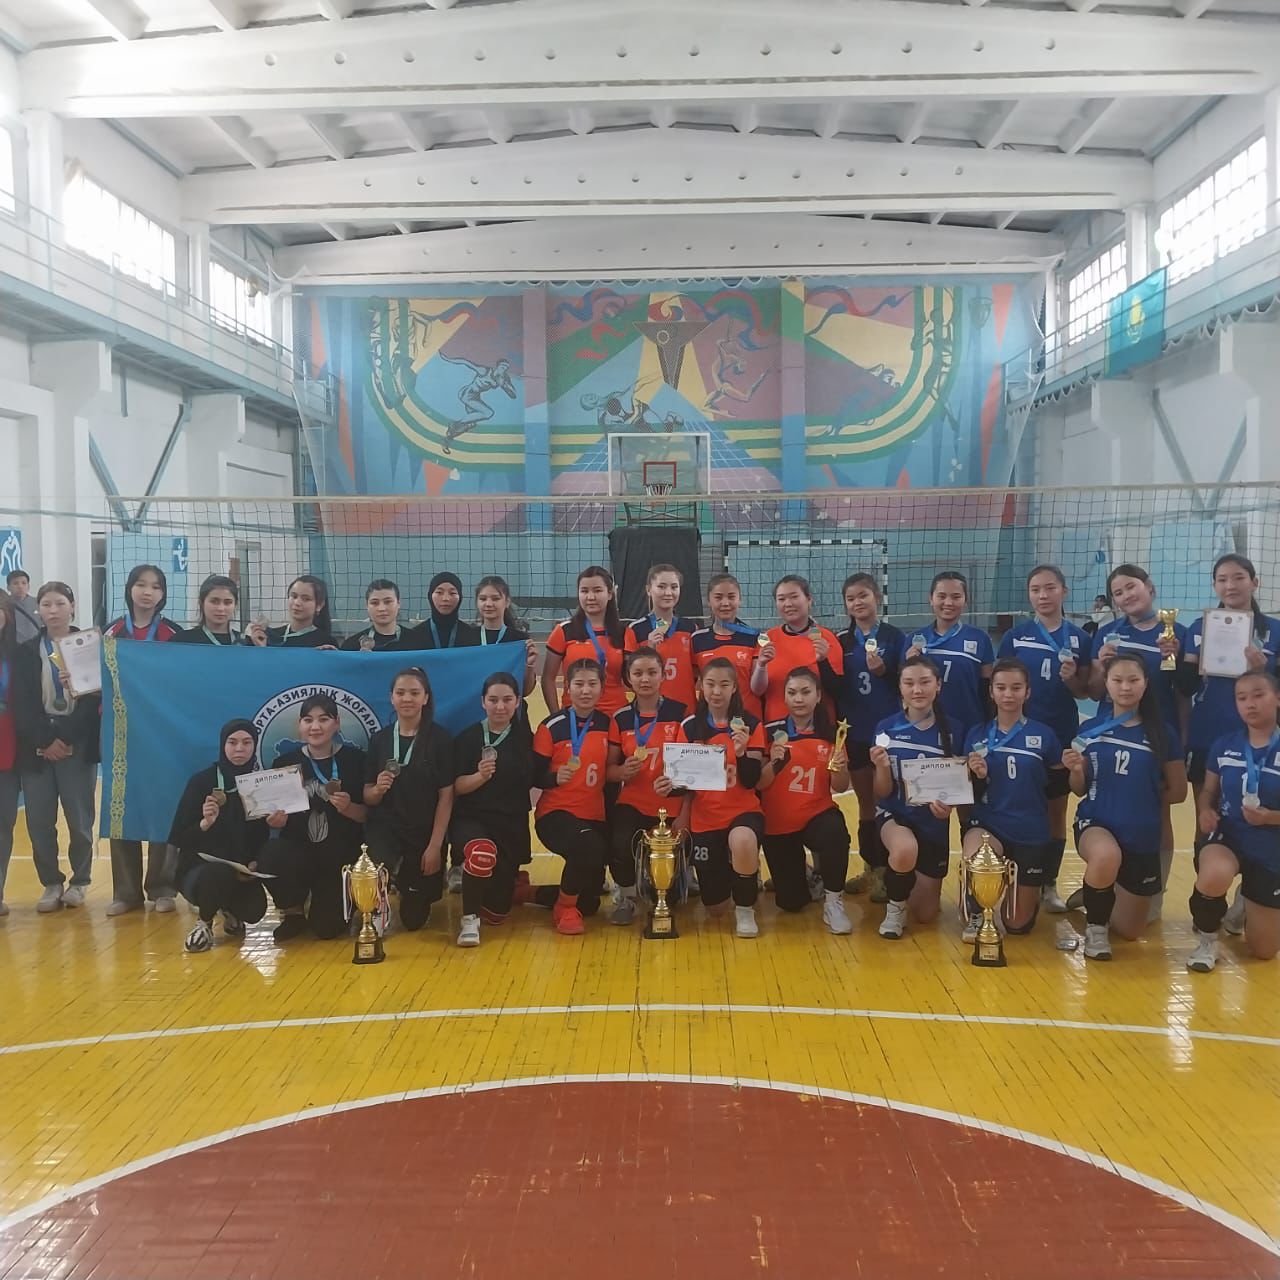 23-26 сәуір күні аралығында М.Әуезов атындағы ОҚУ колледжінің қыздар командасы волейболдан қала аралық ашық турнирден 1 орын алды.